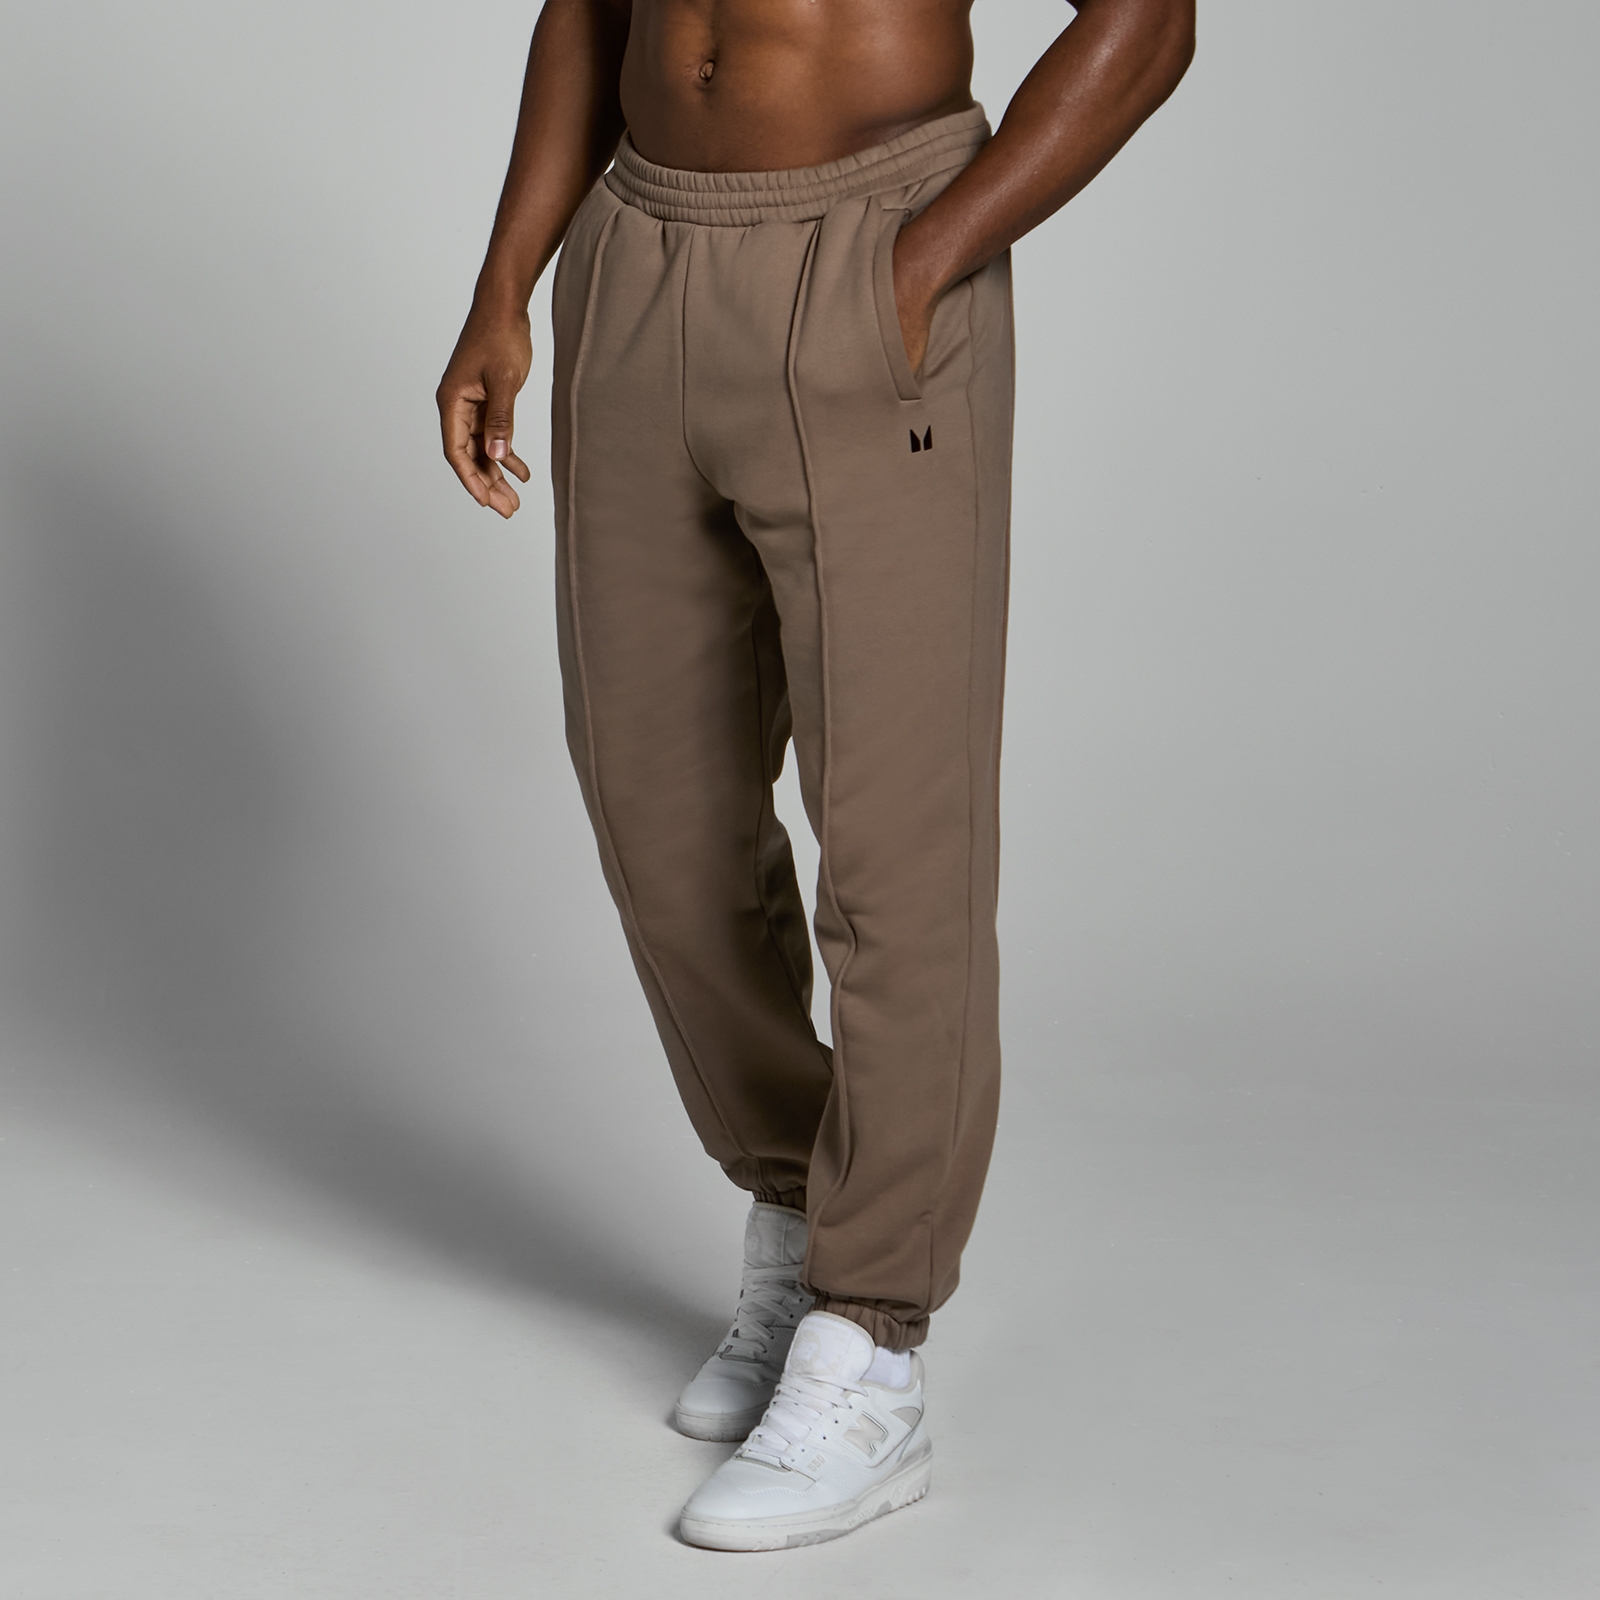 Image of Pantaloni da jogging pesanti oversize MP Lifestyle da uomo - Marrone chiaro - S